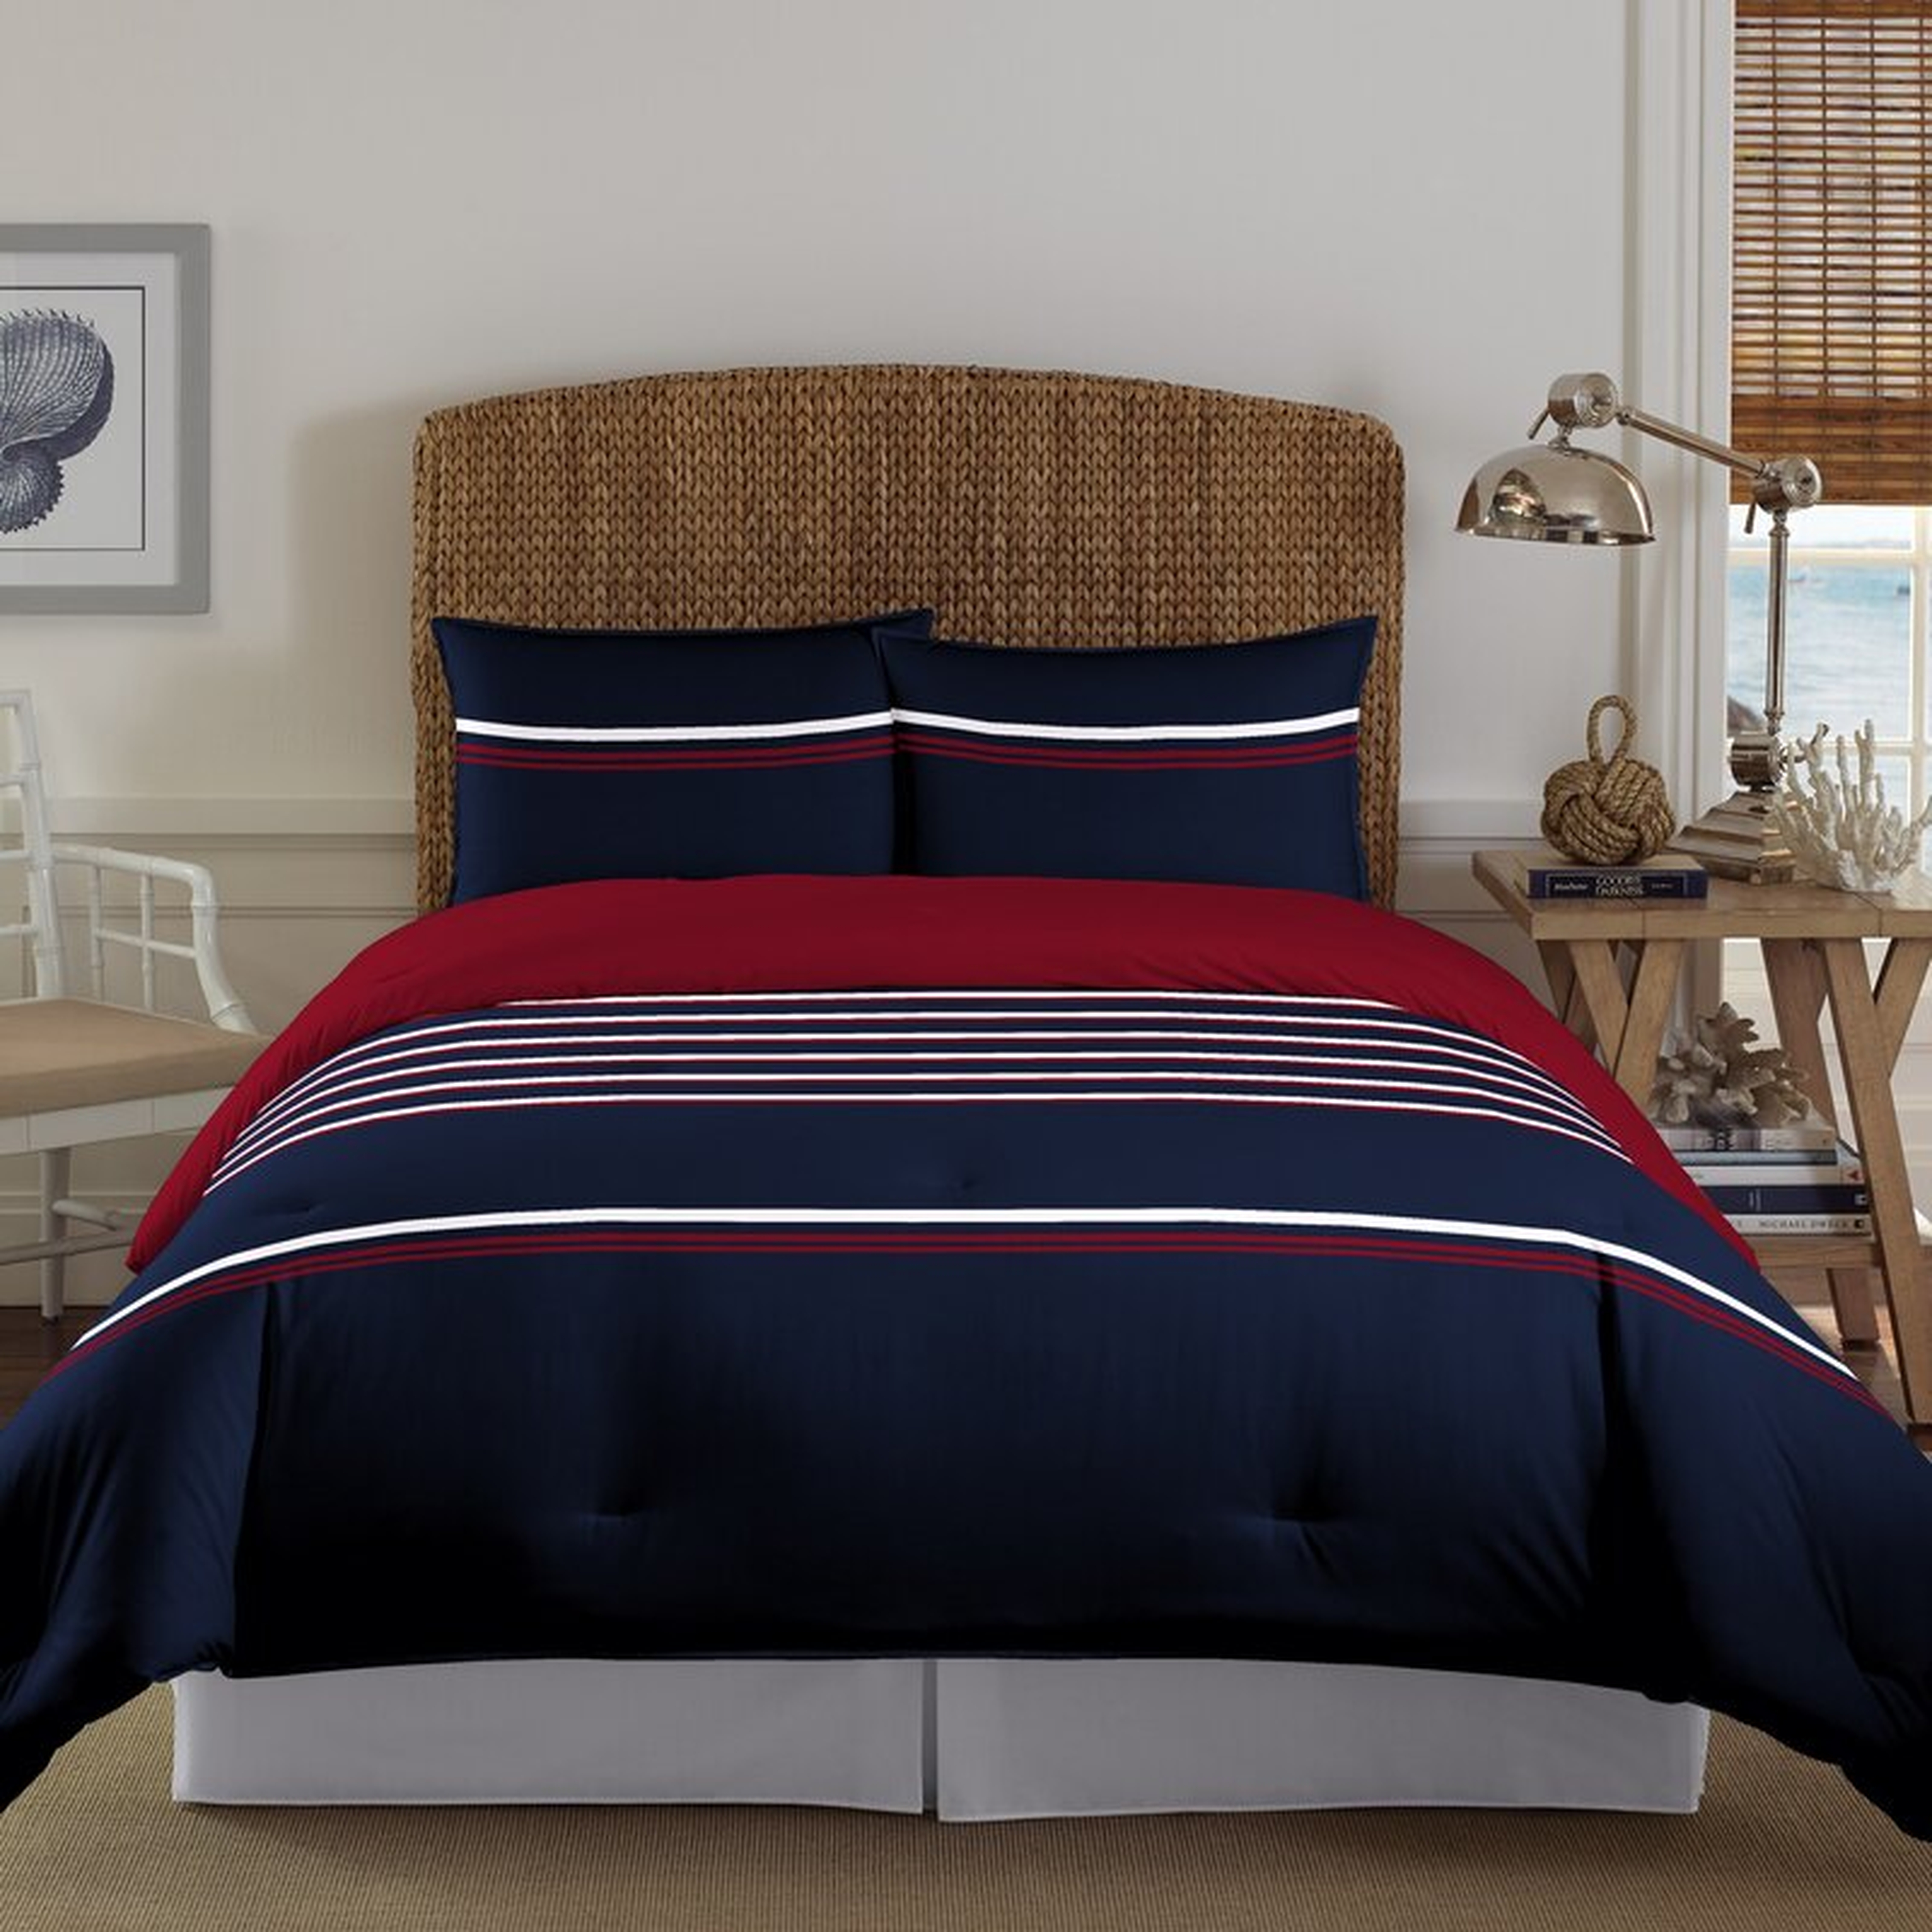 Full / Queen Navy Blue/Red/White Mineola Reversible Comforter Set, Full/Queen - Wayfair